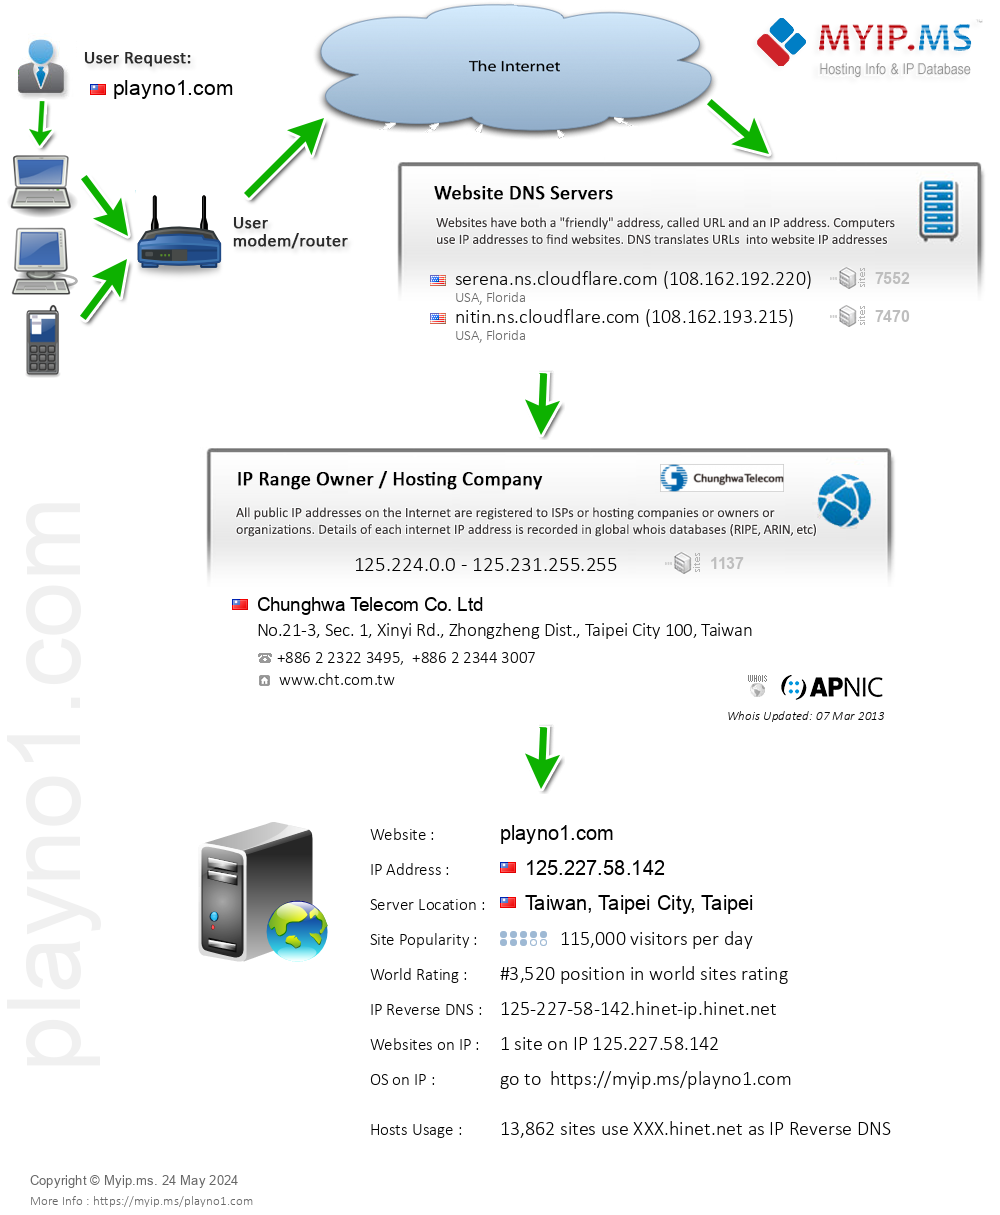 Playno1.com - Website Hosting Visual IP Diagram